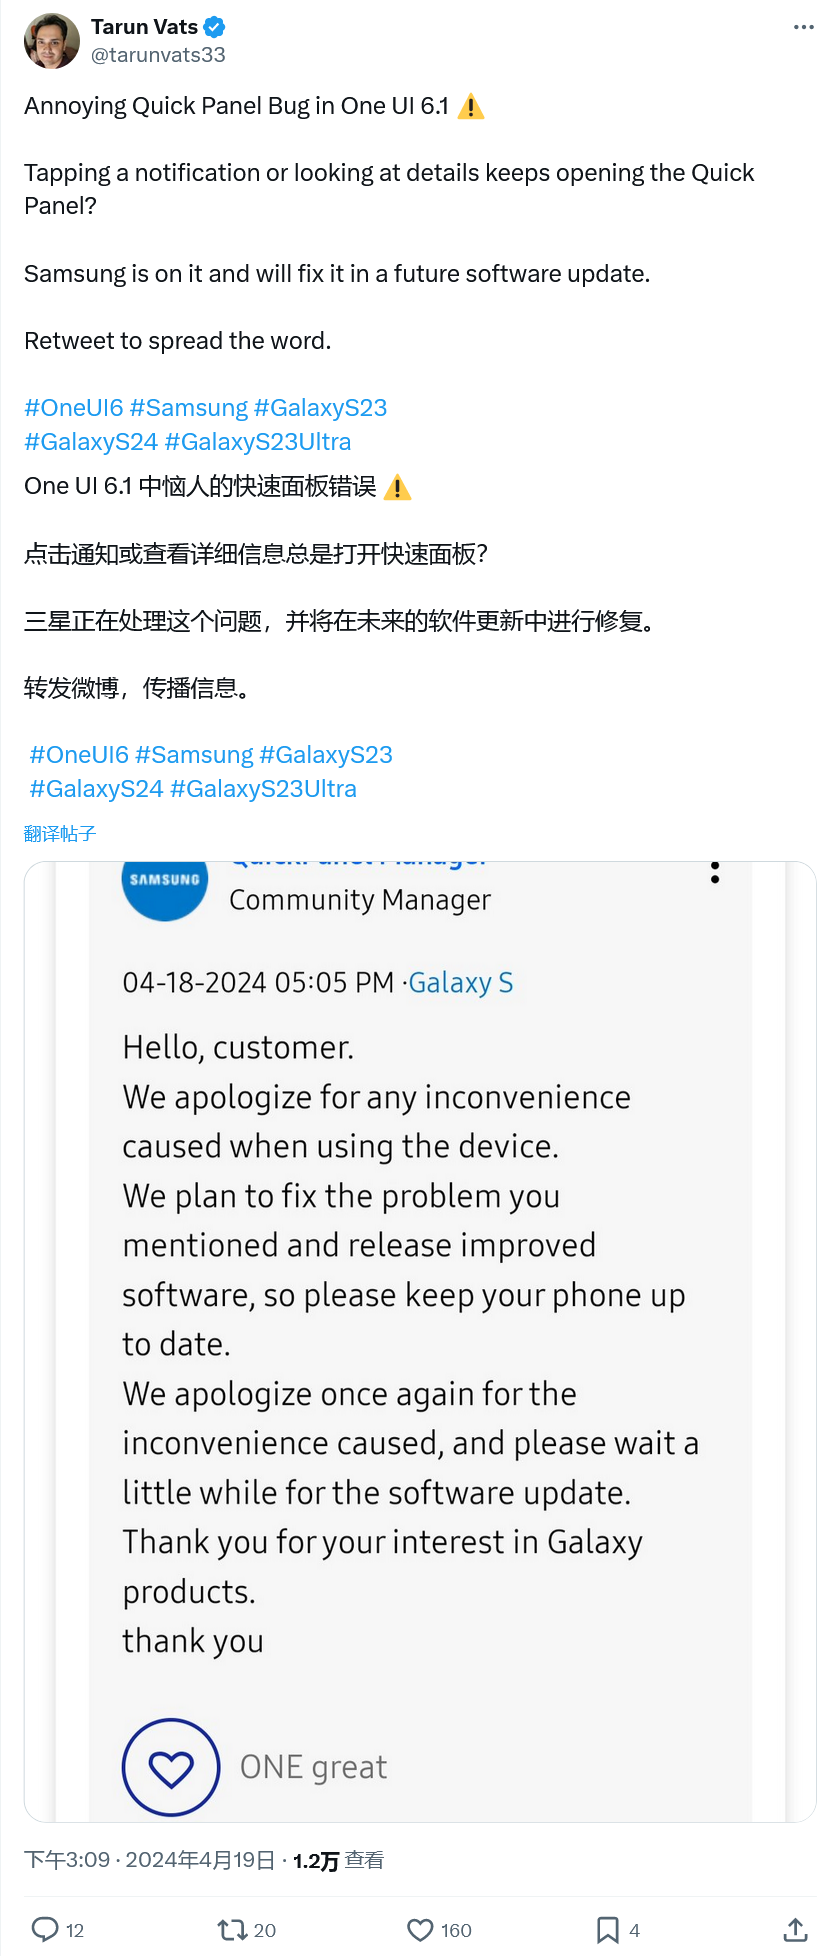 Samsung One UI 6.1 update